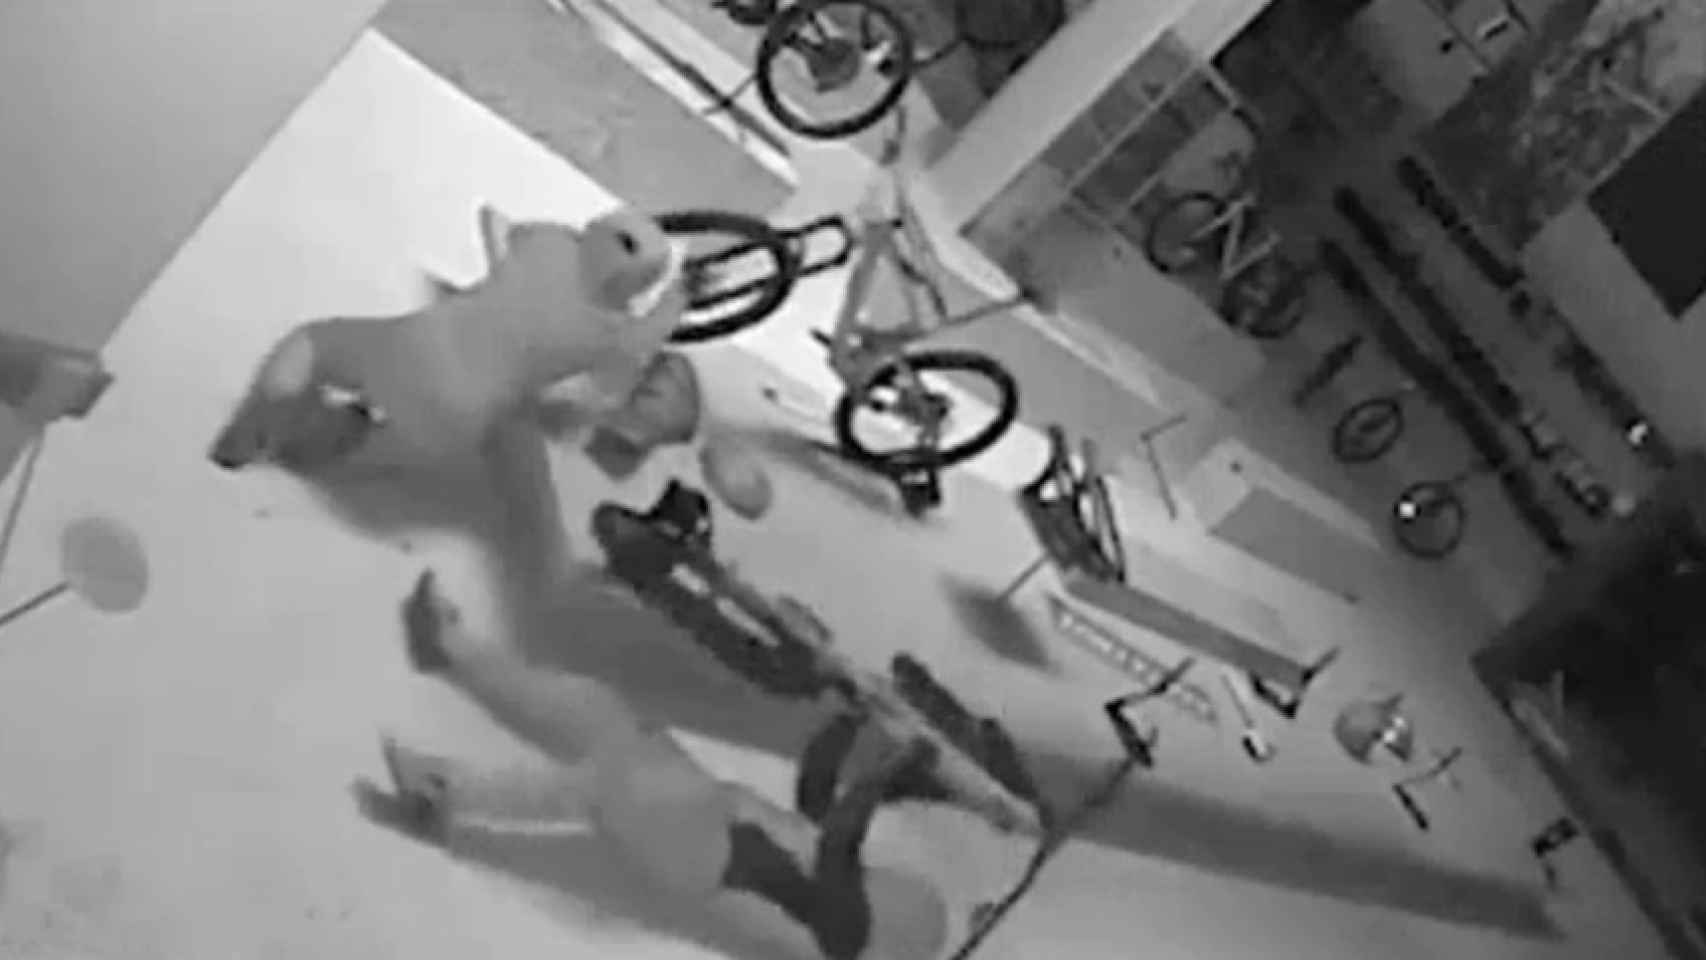 Las cámaras de seguridad de LTMRacing, una tienda especializada, captaron el robo de las 80 bicicletas.